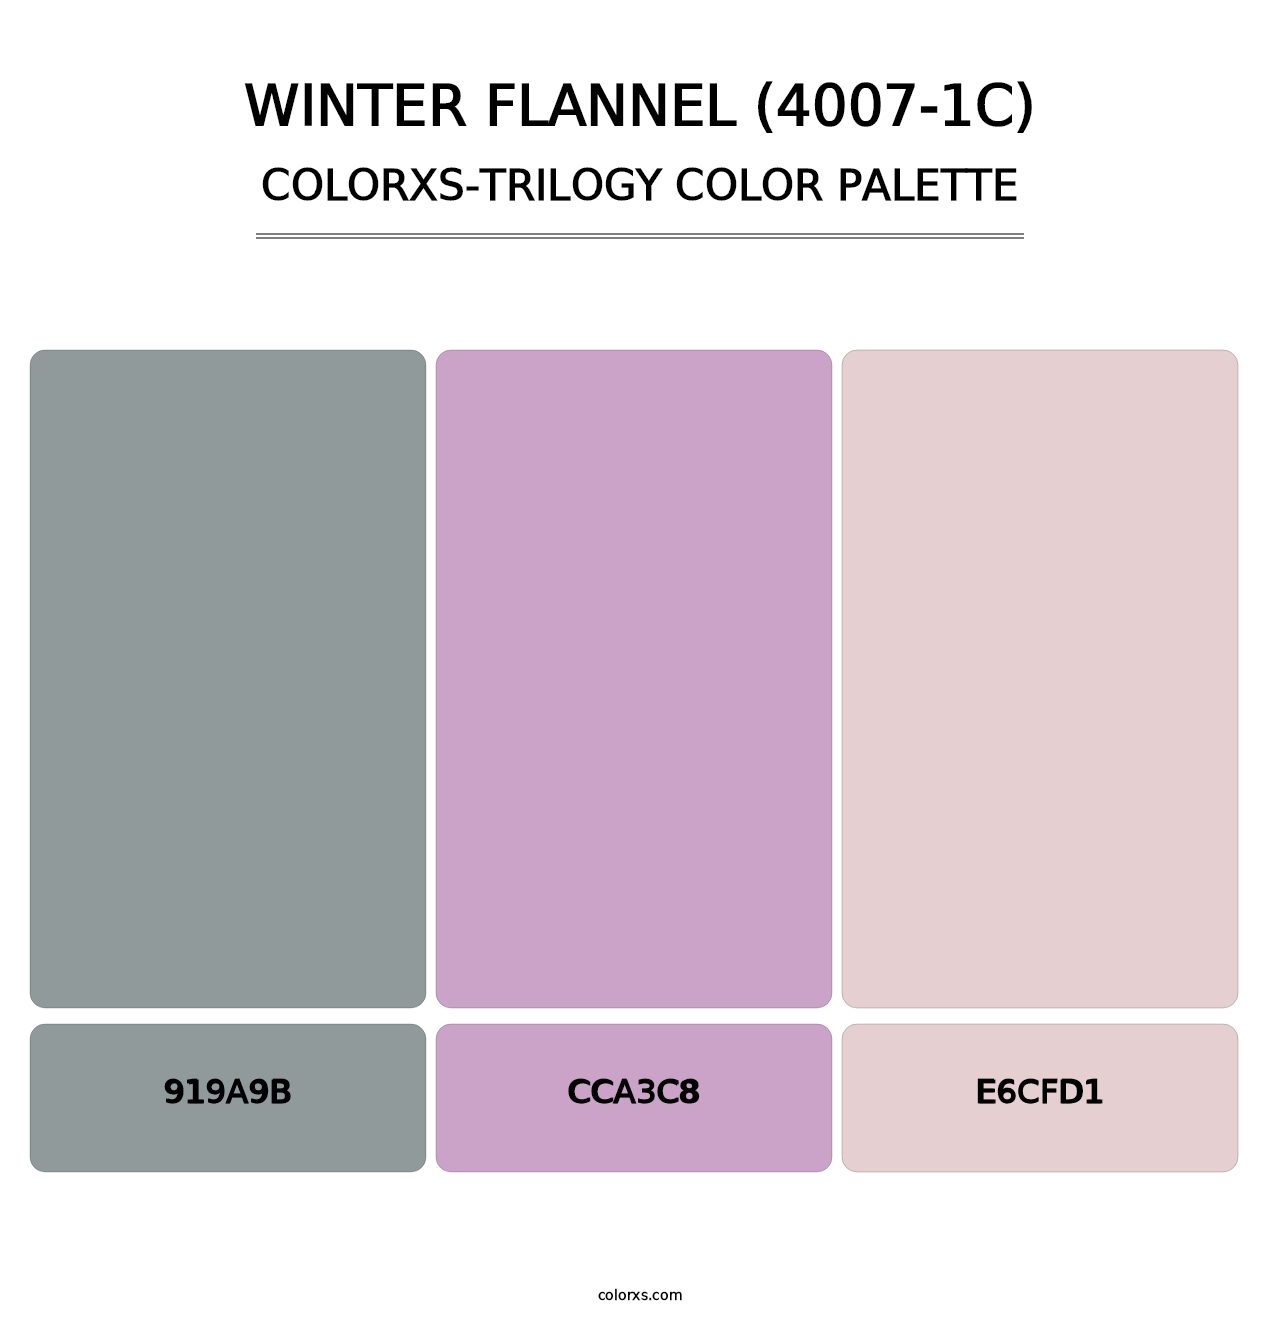 Winter Flannel (4007-1C) - Colorxs Trilogy Palette